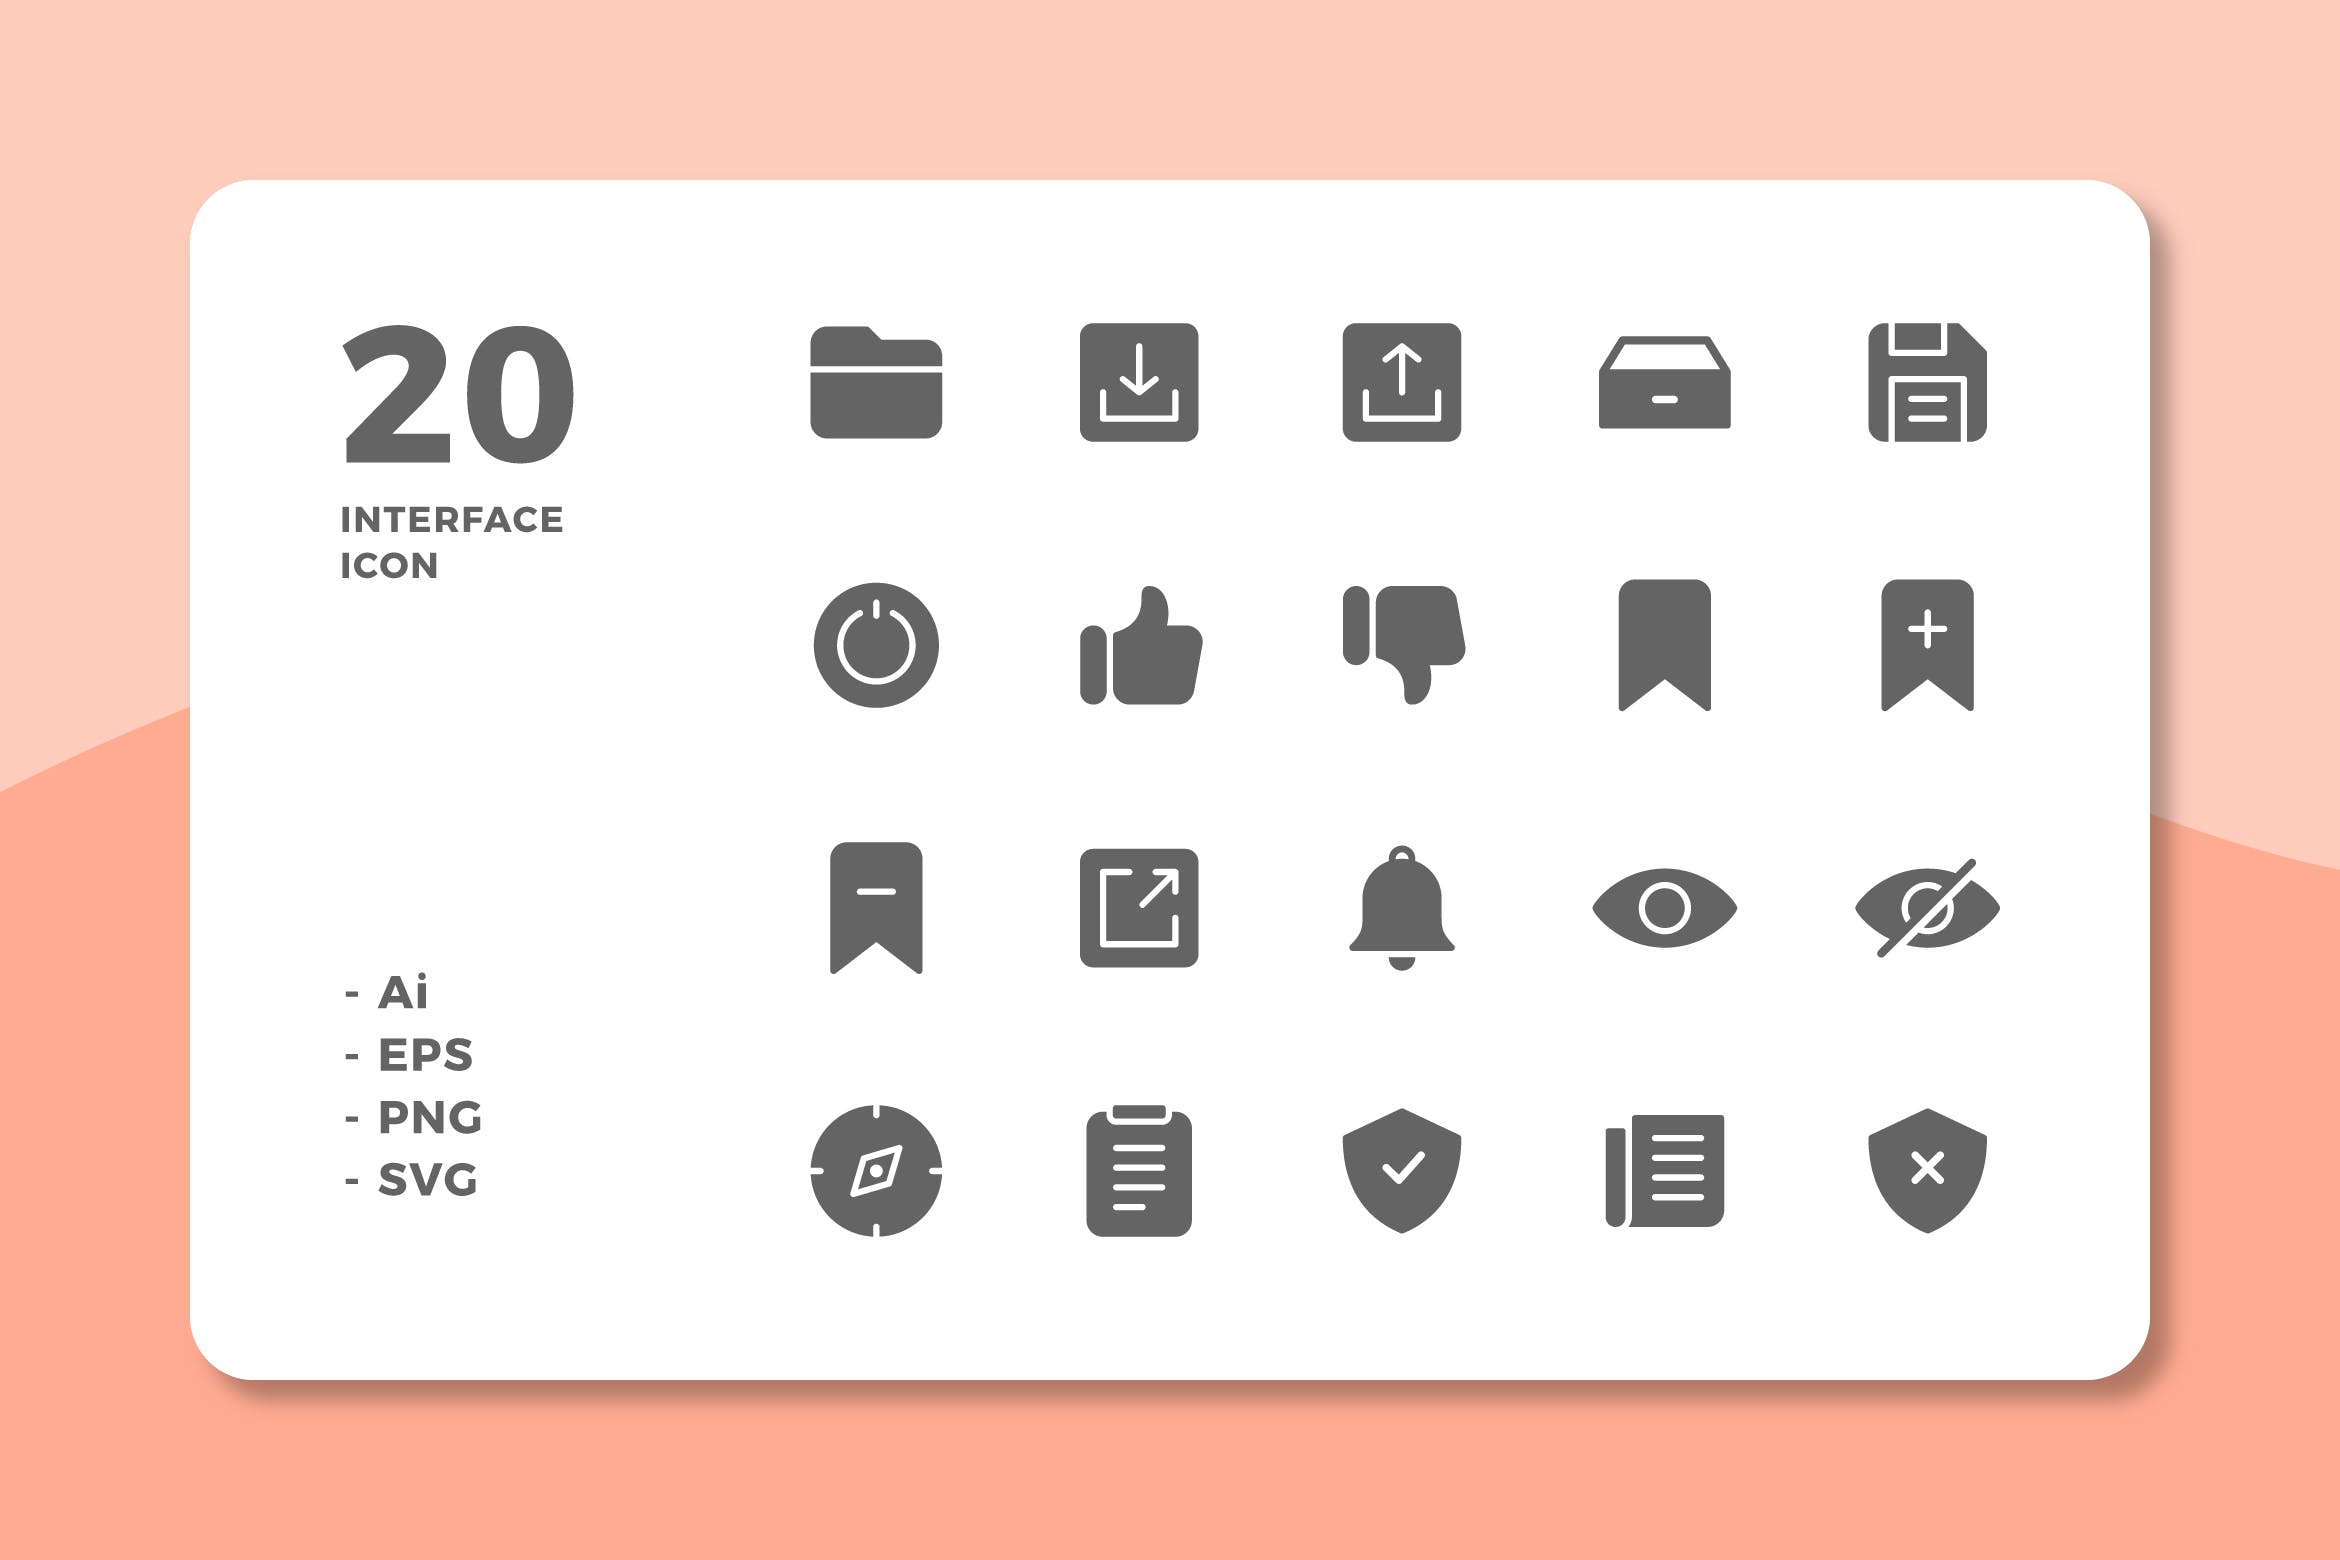 20枚UI界面设计APP操作选项素材库精选图标v3 20 Interface Icons Vol.3 (Solid)插图